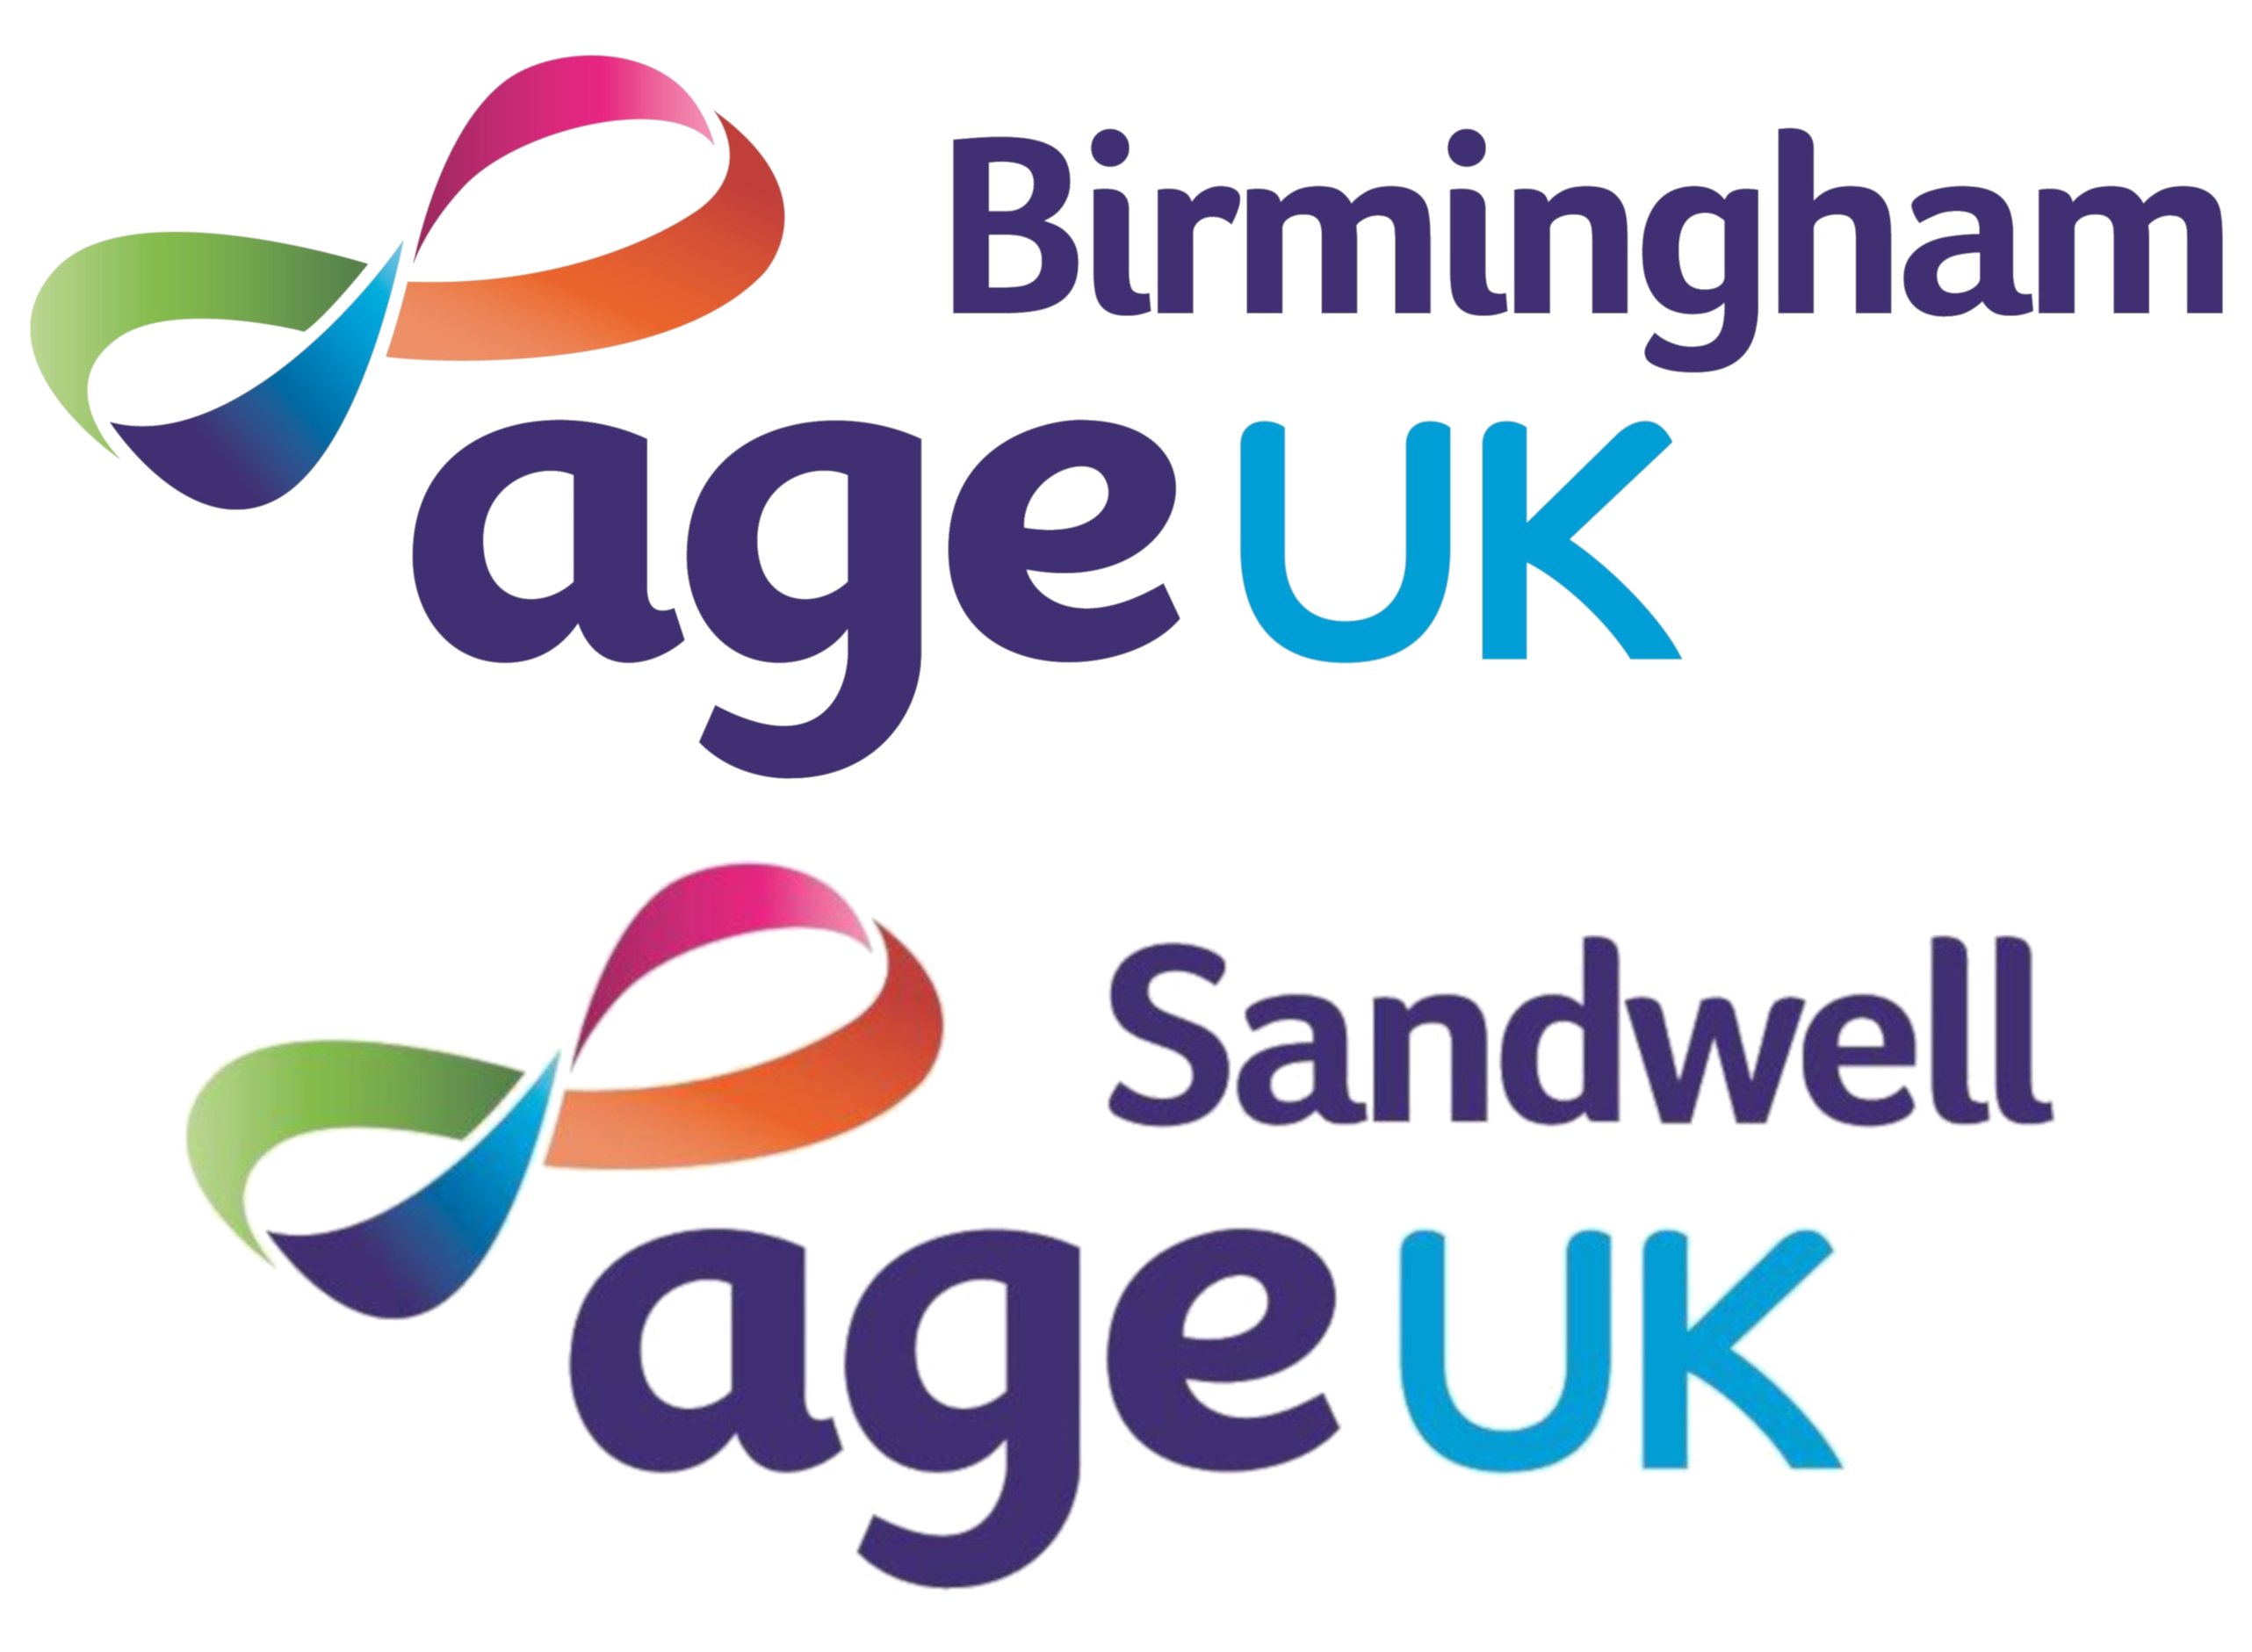 Age Uk Birmingham and Age Uk Sandwell logos